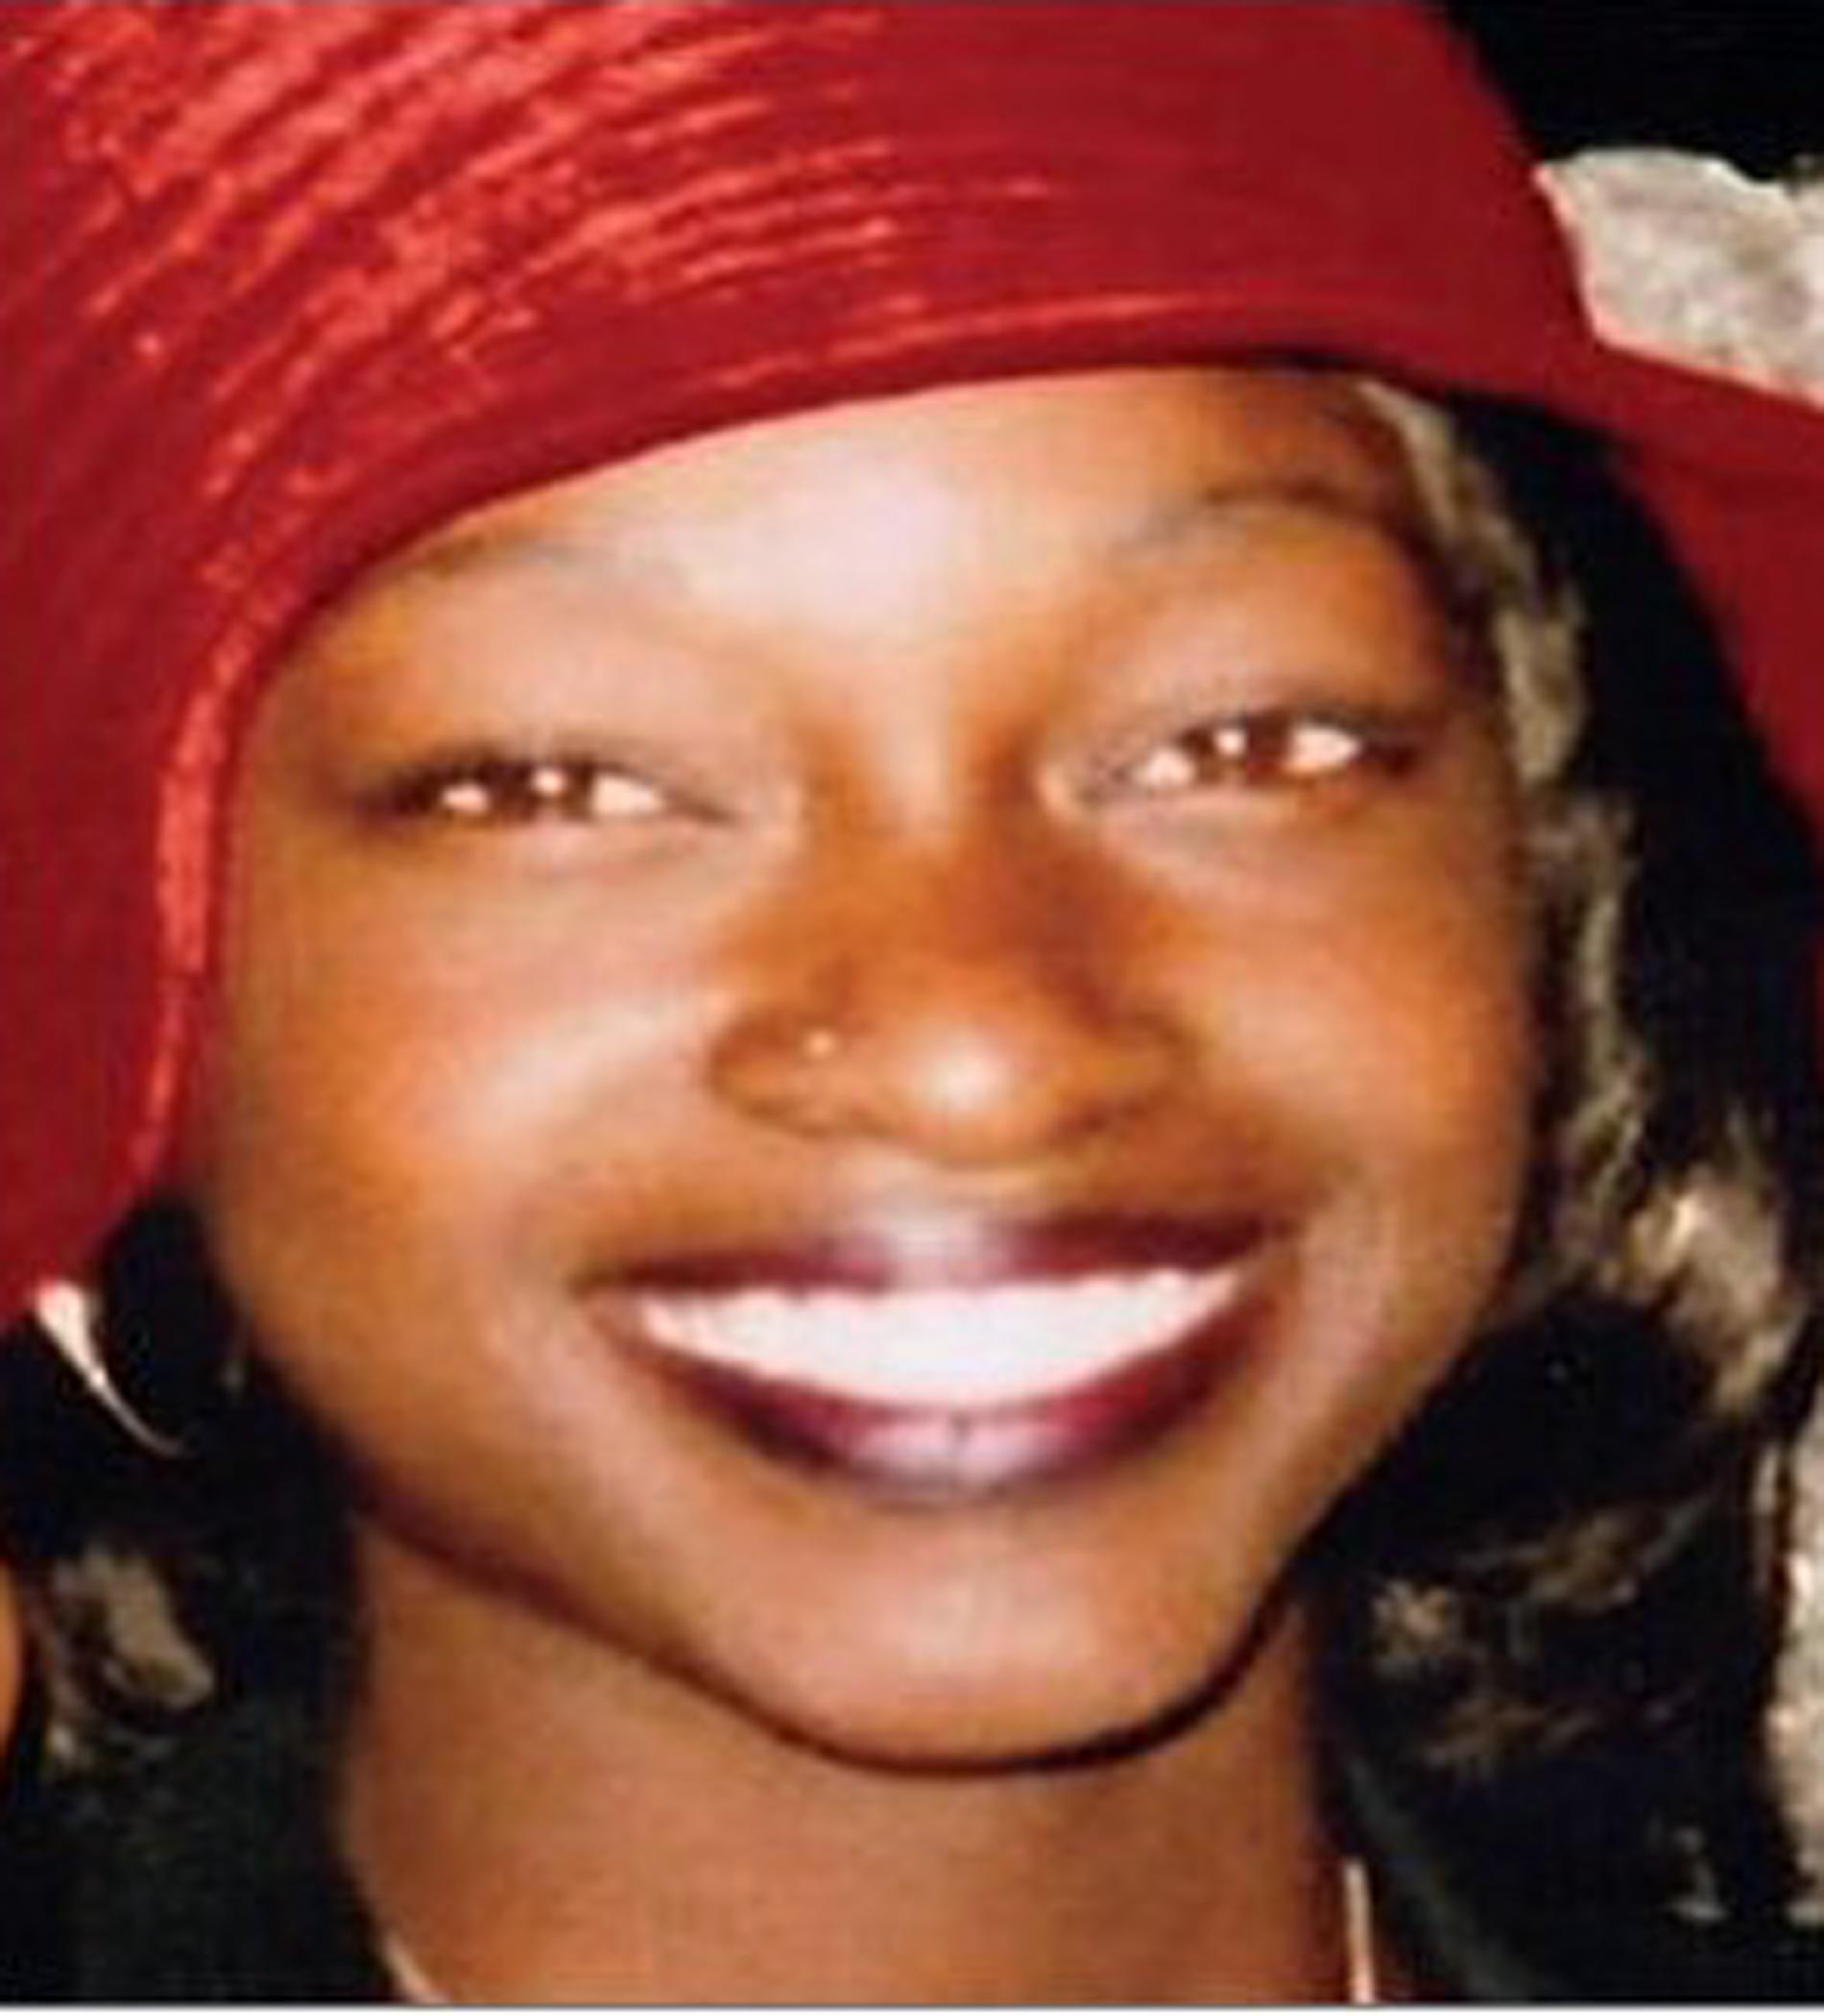 Janecia Peters, 25, blev ett av Grim Sleepers offer när hon dödades i januari 2007 i Gramercy Park, Los Angeles.